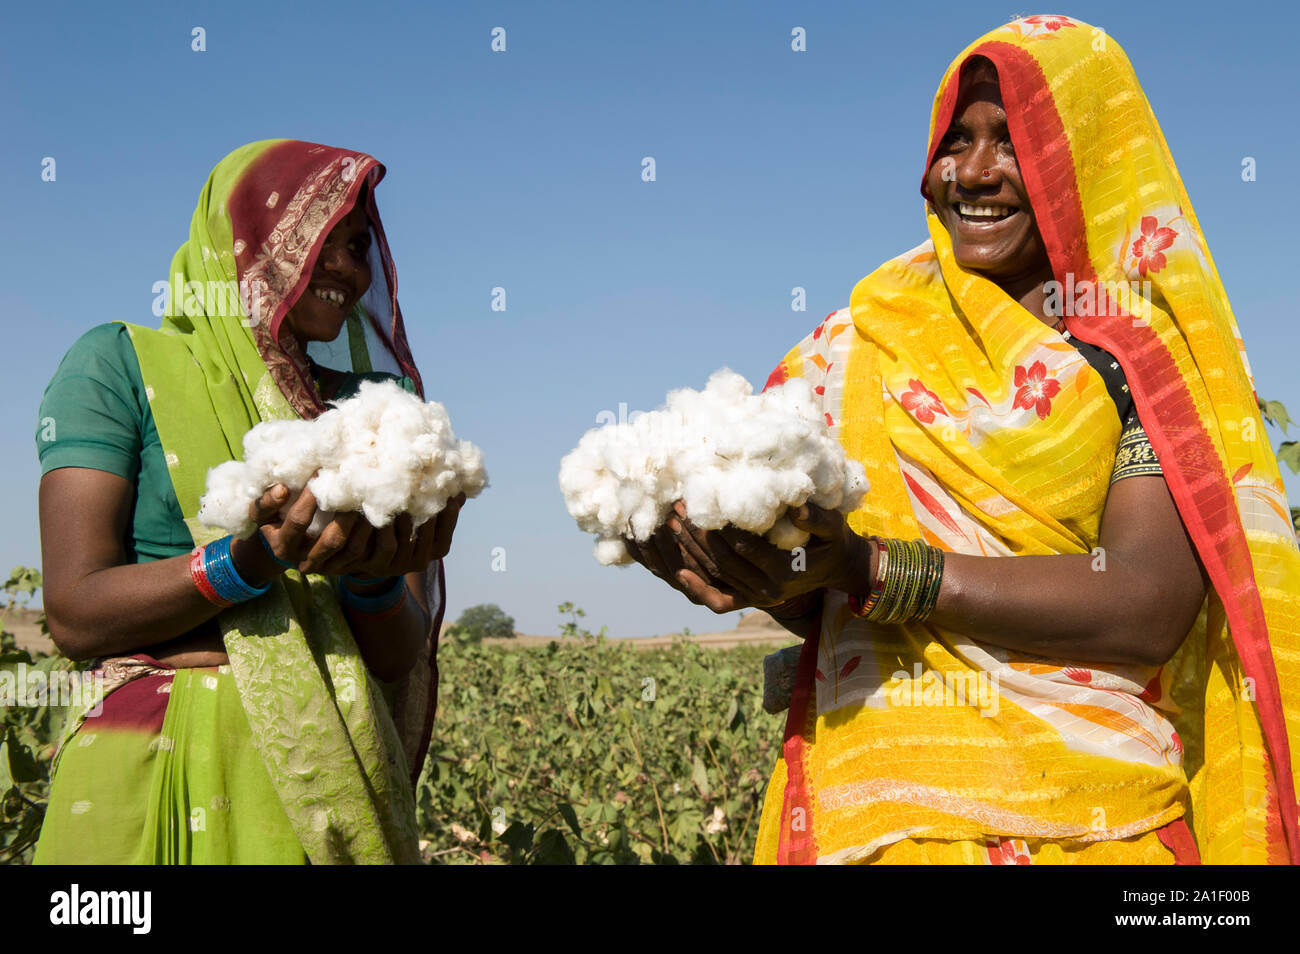 Indien Madhya Pradesh Khargone, tribal Landwirt der kooperativen Shiv Krishi Utthan Sanstha produzieren Fairtrade und Bio Baumwolle/INDIEN Madhya Pradesh Khargone, Kooperative Shiv Krishi Utthan Sanstha vermarktet und Fairtrade Biobaumwolle von Adivasi Farmern Stockfoto